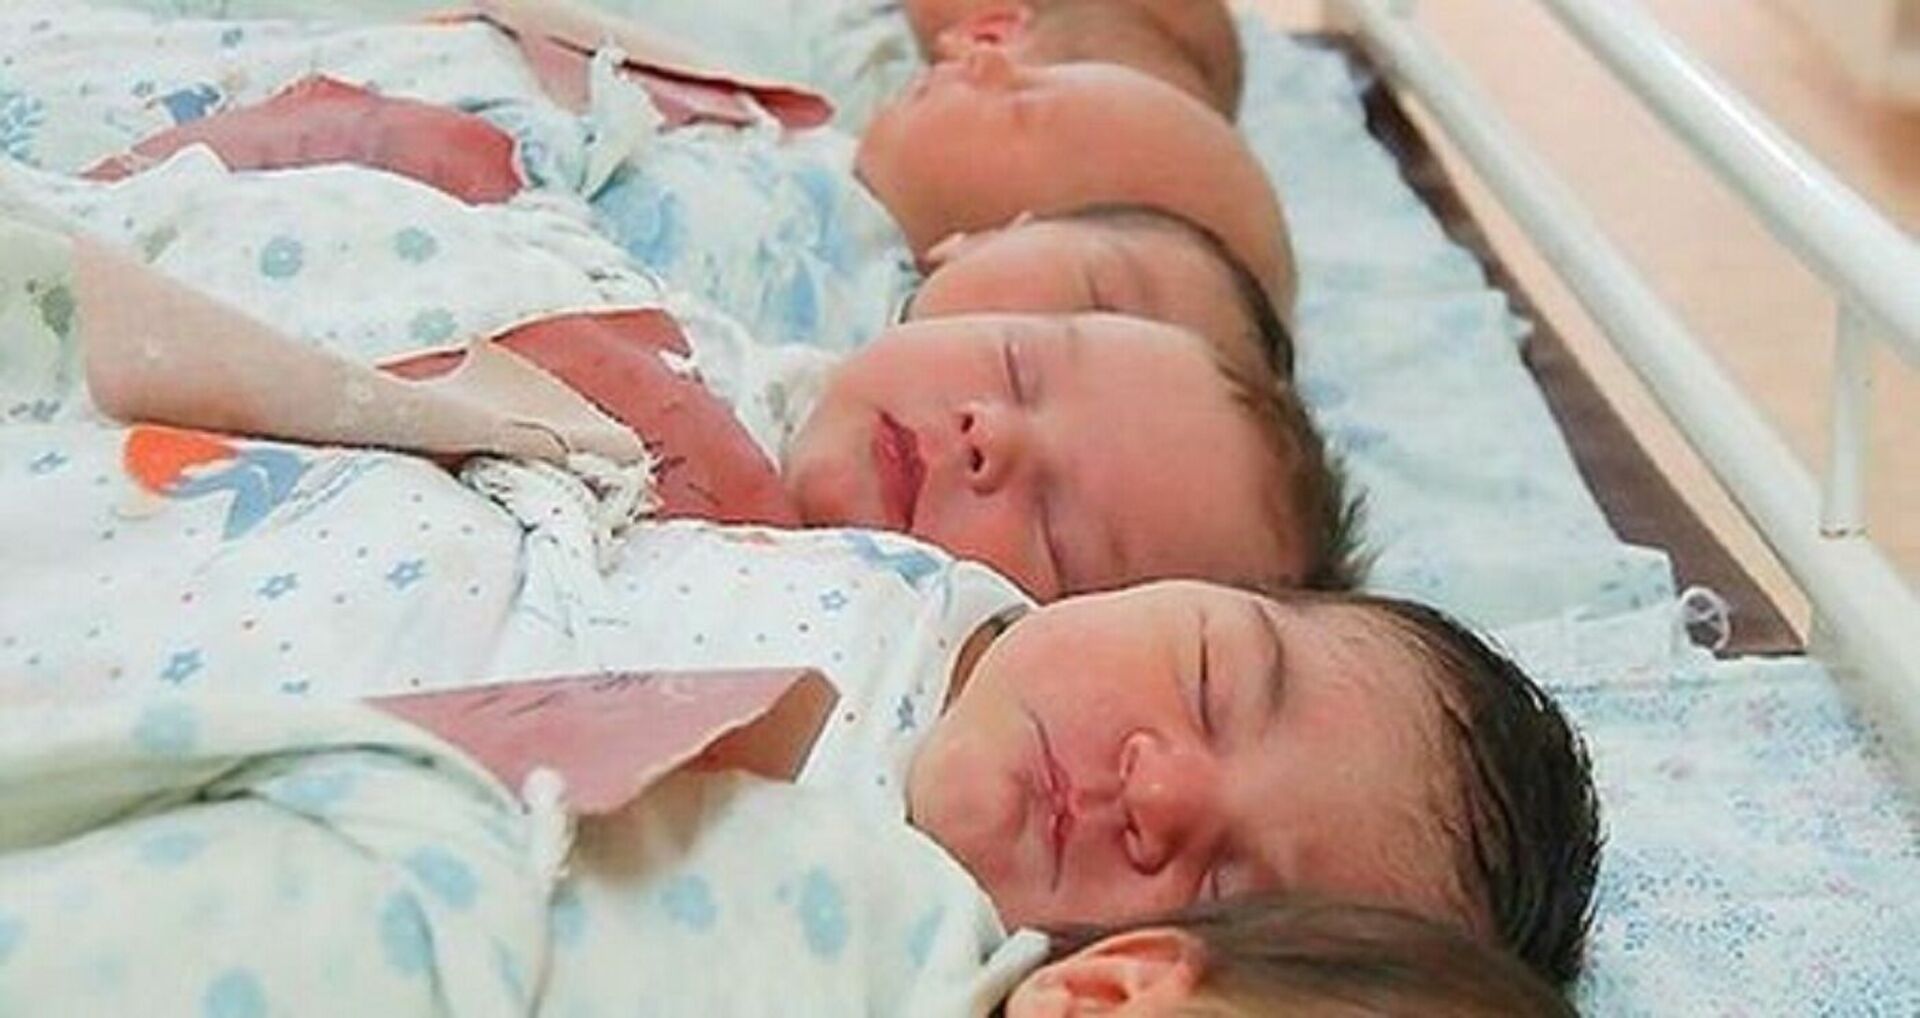 Дети рожденные 2015 году. Новорожденные малыши в роддоме.